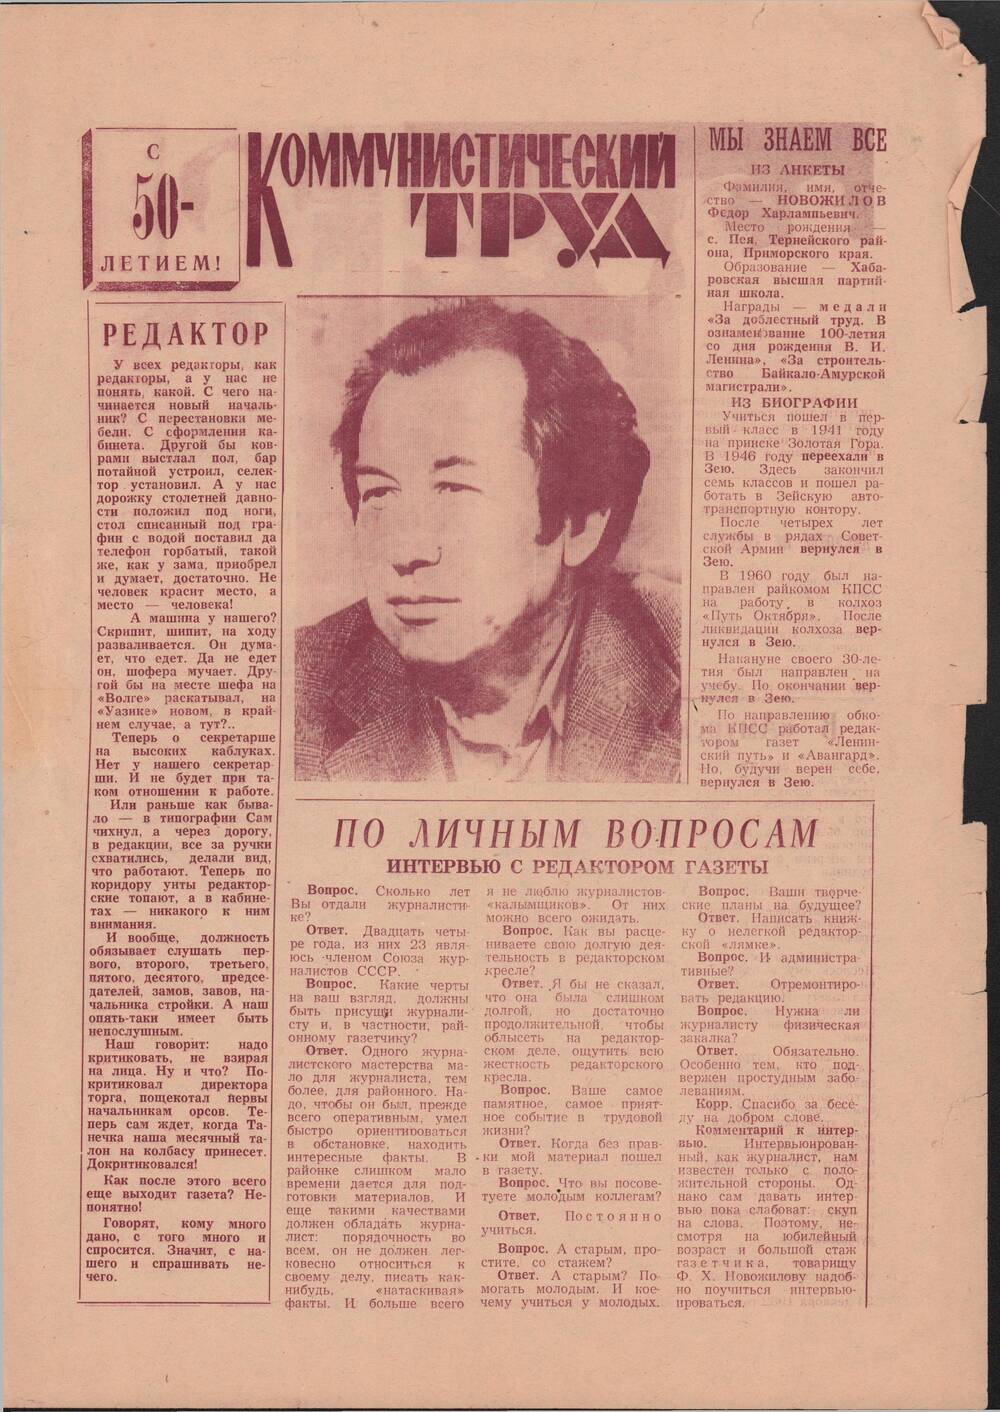 Газета коммунистический труд от 24 декабря 1982 года (выпуск специальный), выпущенная в честь 50-летия со дня рождения.